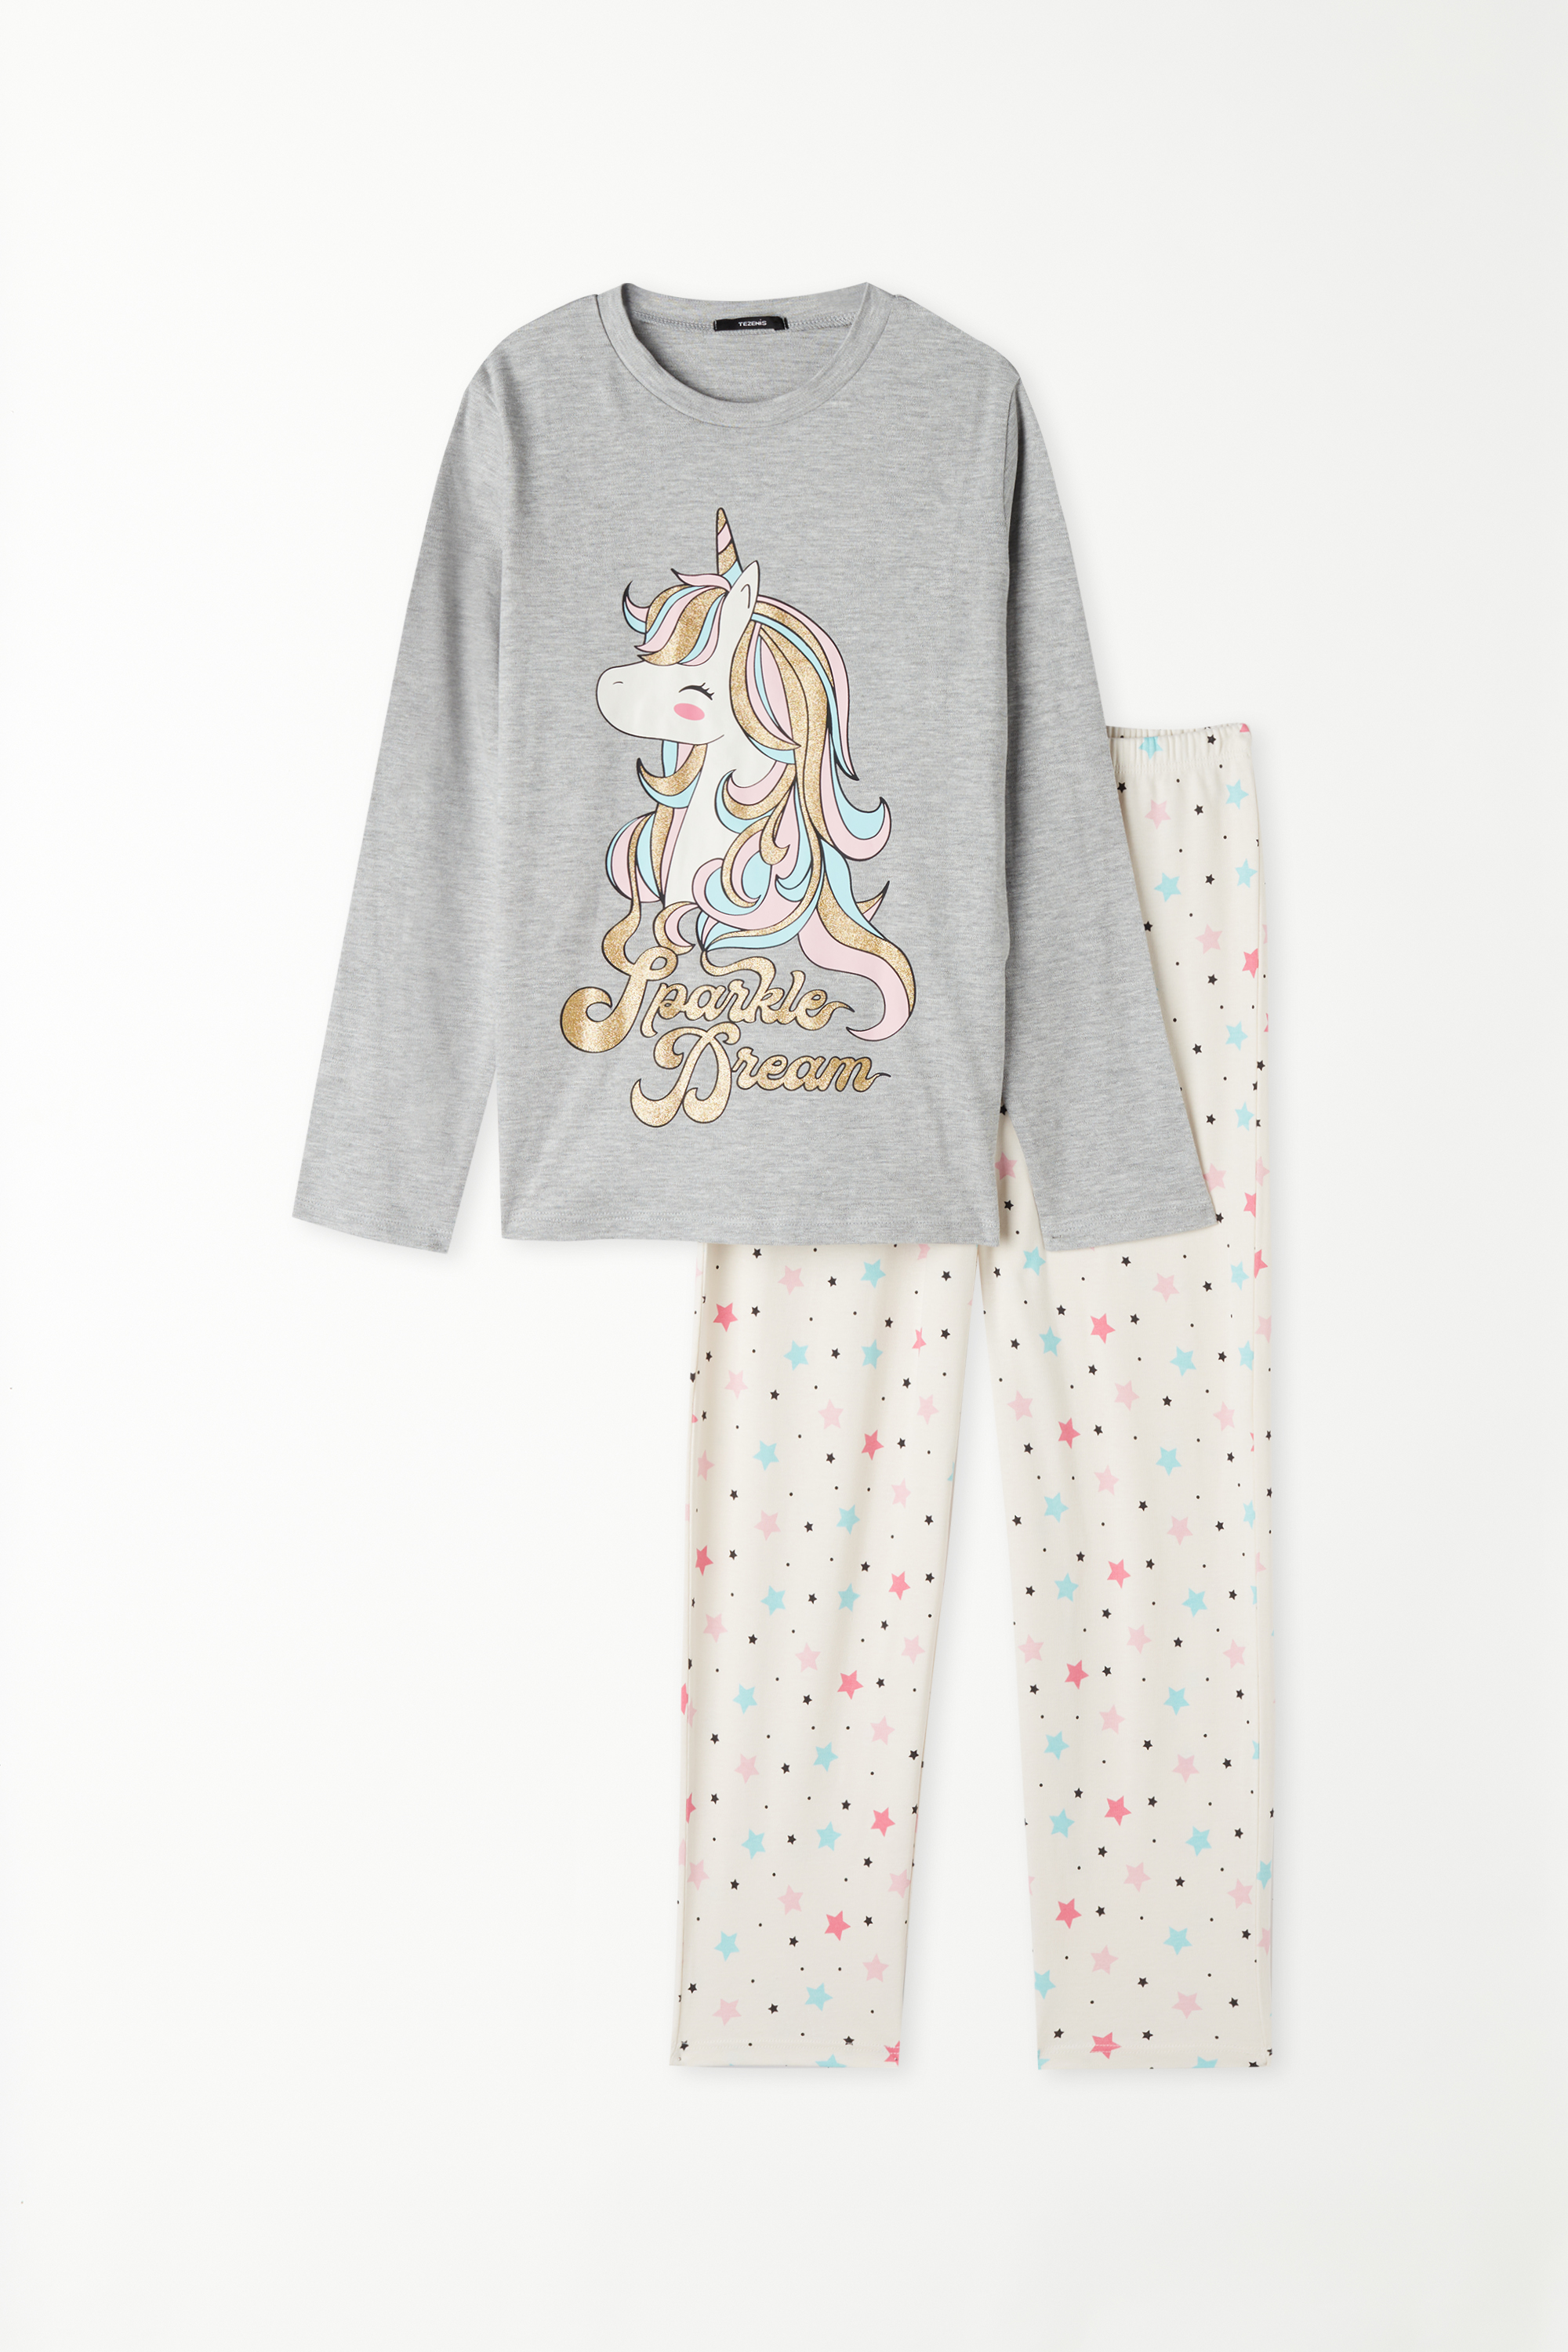 Dlhé Bavlnené Dievčenské Pyžamo s Potlačou Jednorožca